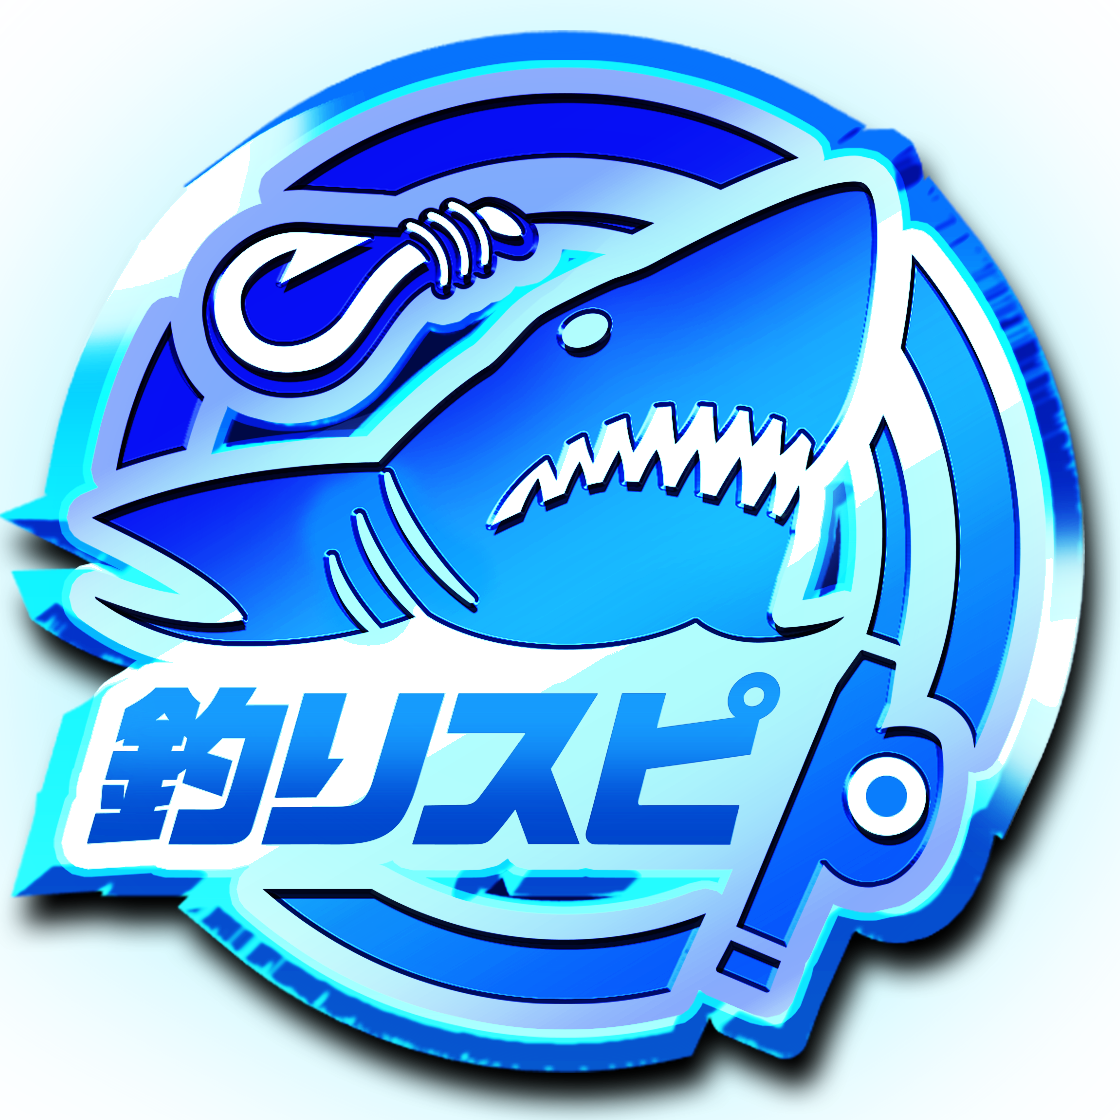 青く輝くかっこいいサメの特別称号バッジがもらえる 釣りスピ Net 登録キャンペーン本日開始 マンガ連載化も決定 釣りスピリッツ シンカー 稼働日12 15 木 に同時スタート バンダイナムコアミューズメントのプレスリリース